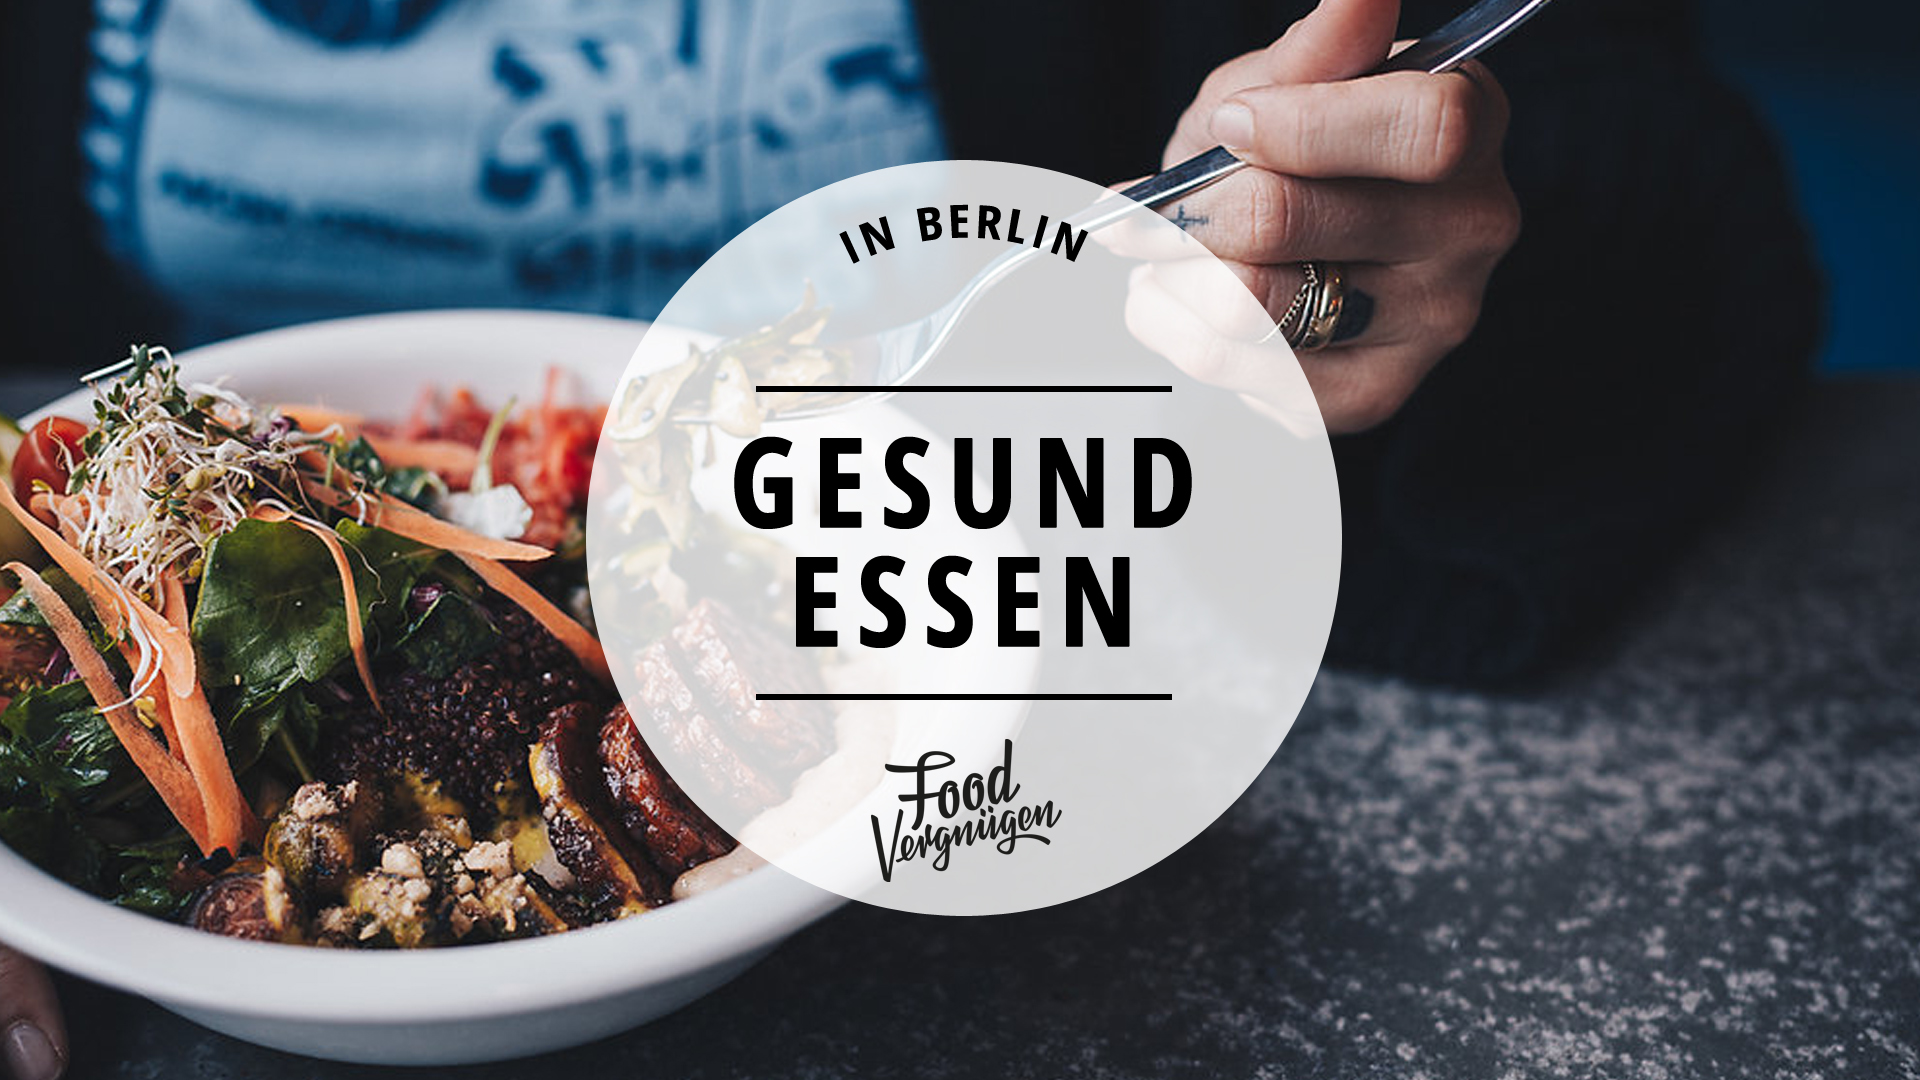 11 Restaurants In Denen Ihr Endlich Wieder Gesund Essen Konnt Mit Vergnugen Berlin